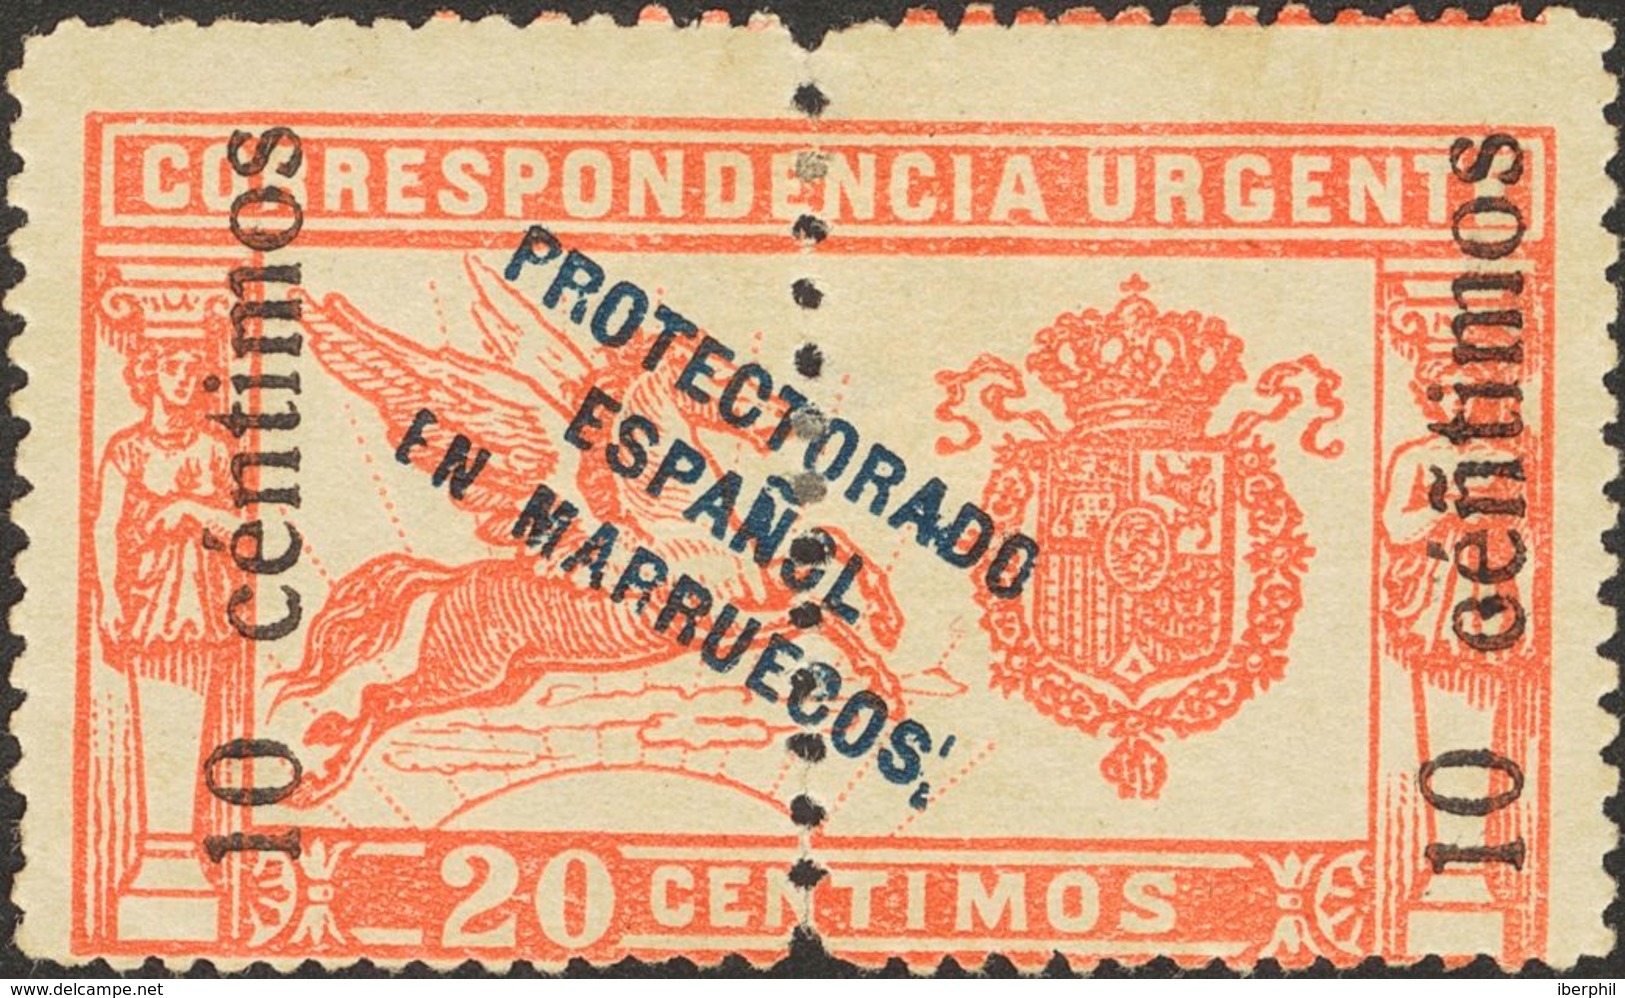 Marruecos. * 66hed 1920. 10 Cts Sobre 20 Cts Rojo. Variedad "Ñ" EN LUGAR DE "N" EN CENTIMOS. MAGNIFICO. 2013 255. - Spanish Morocco